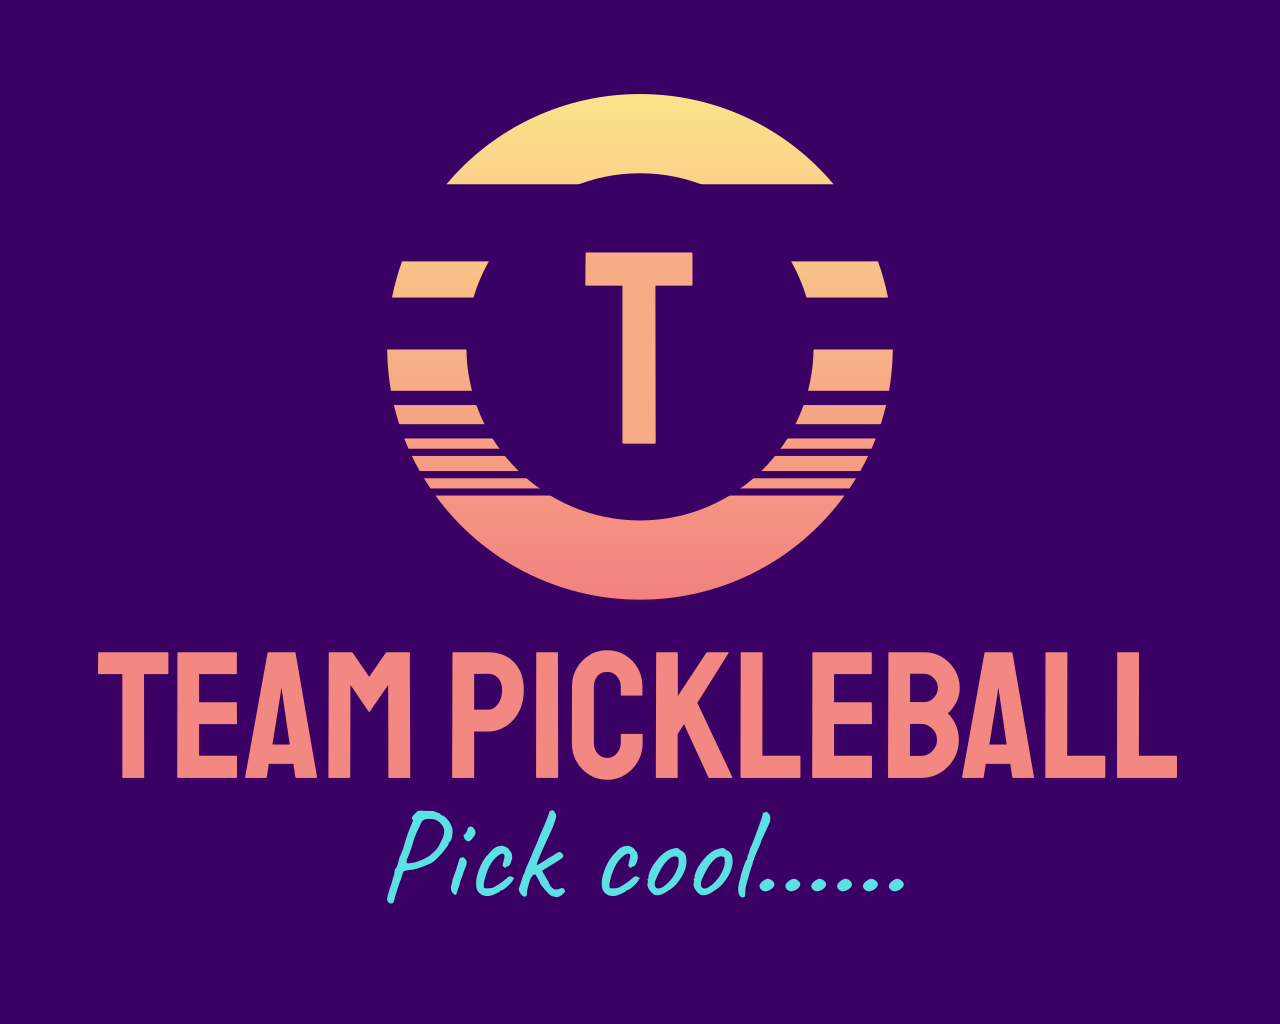 Team Pickleball